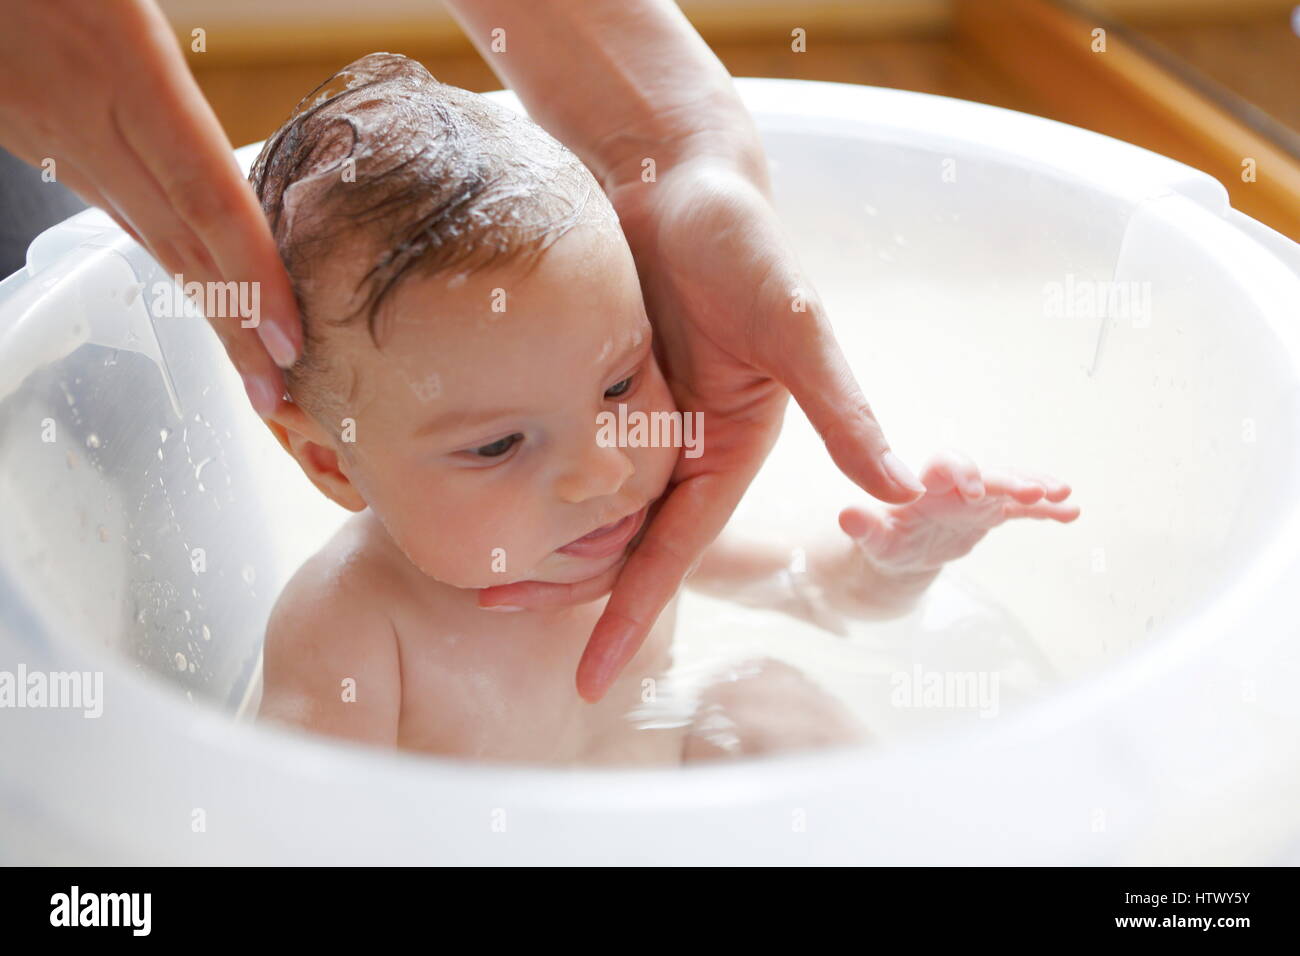 bathing 2 week old baby